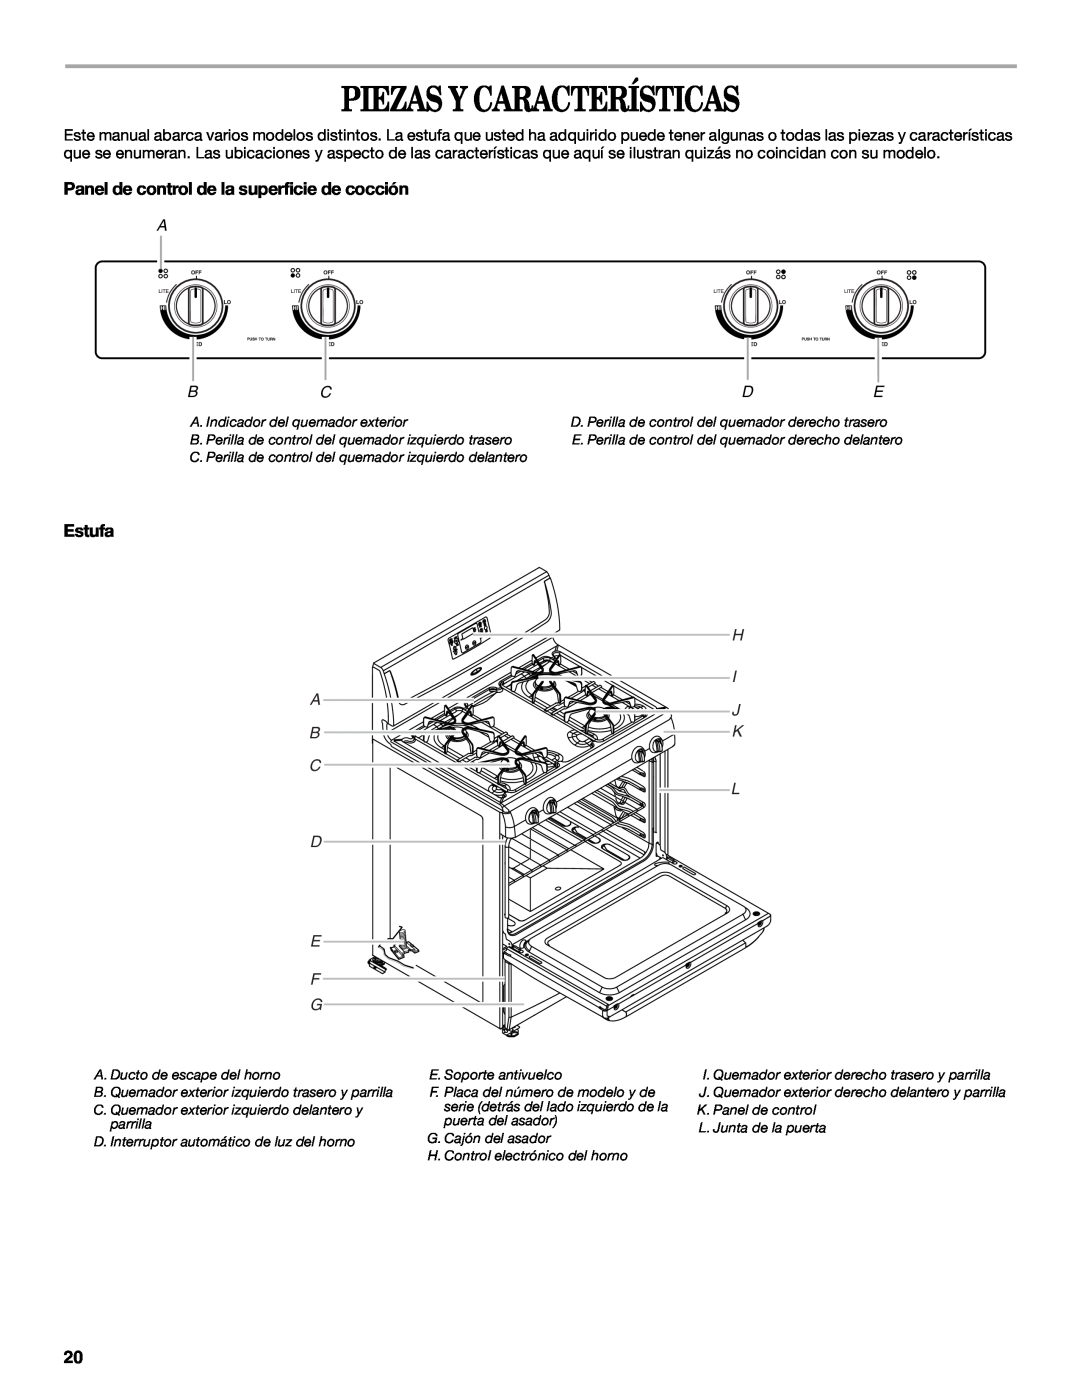 Whirlpool W10099470 manual Piezas Y Características, Panel de control de la superficie de cocción, Estufa, E F G 